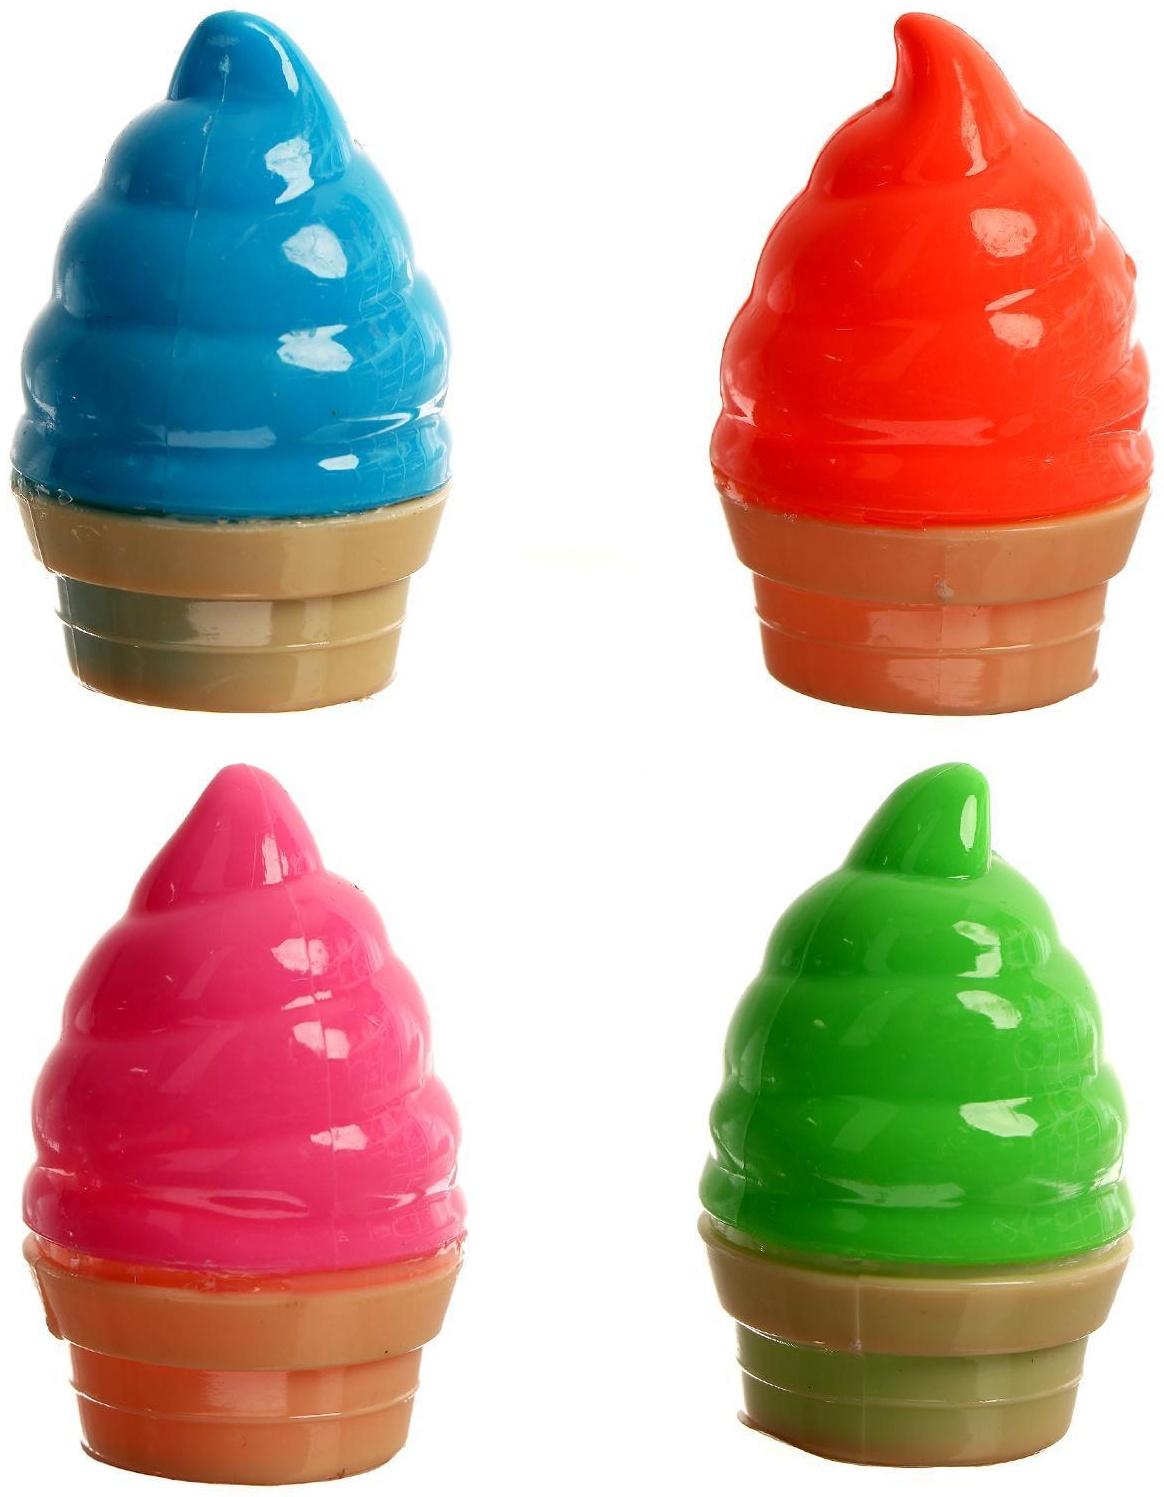 Лизун «Мороженое», твёрдый, цвета МИКС